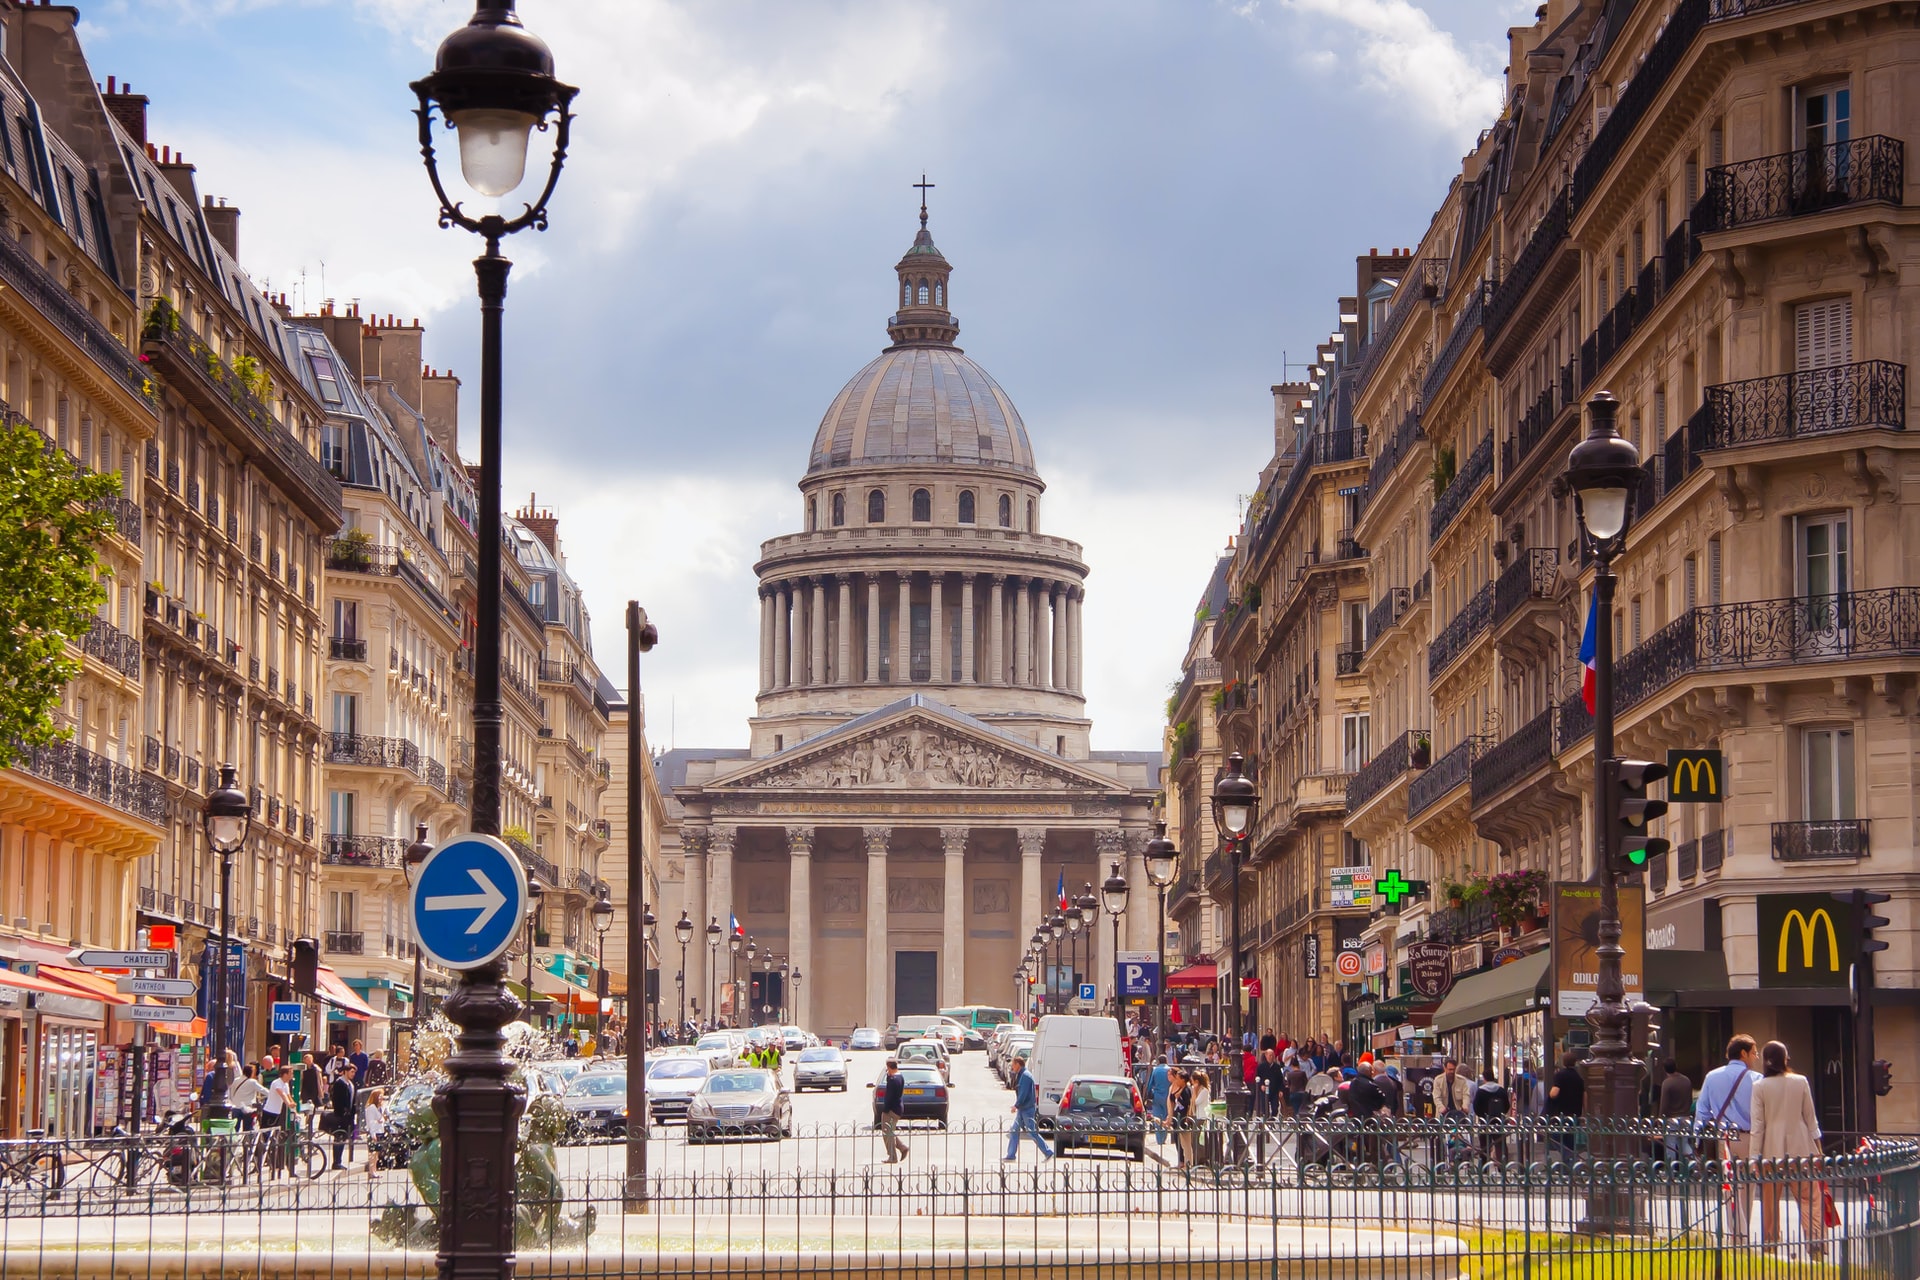 París és la ciutat més romàntica del món, i el Quartier Latin és la millor ubicació per a una escapada romàntica, lluna de mel o per enamorar-se de la ciutat.